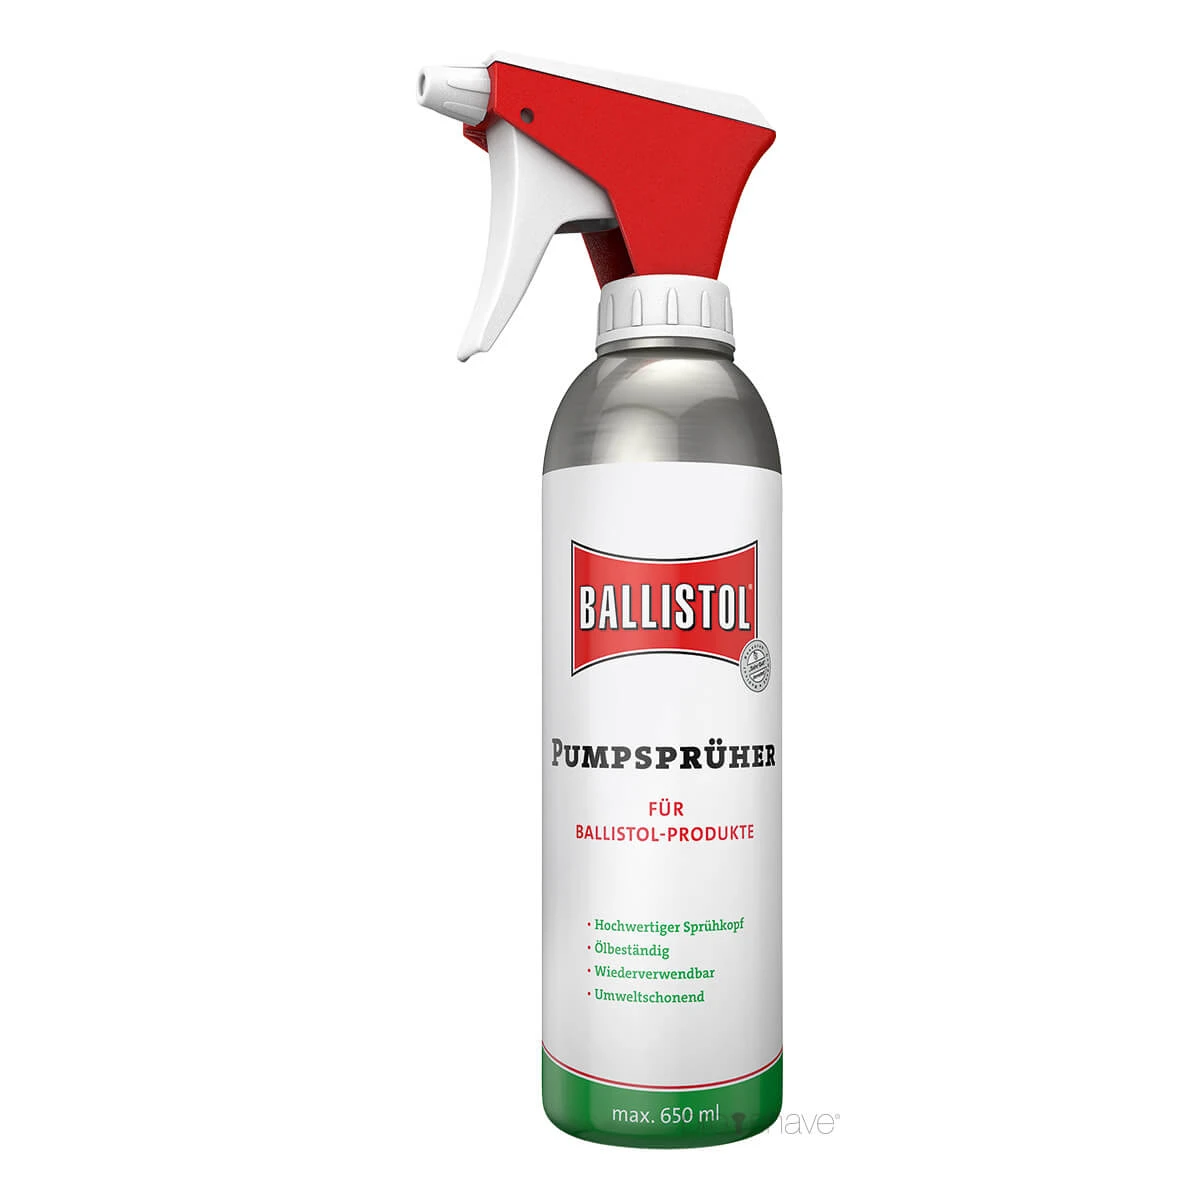 Ballistol Universal Oil proven since 1904